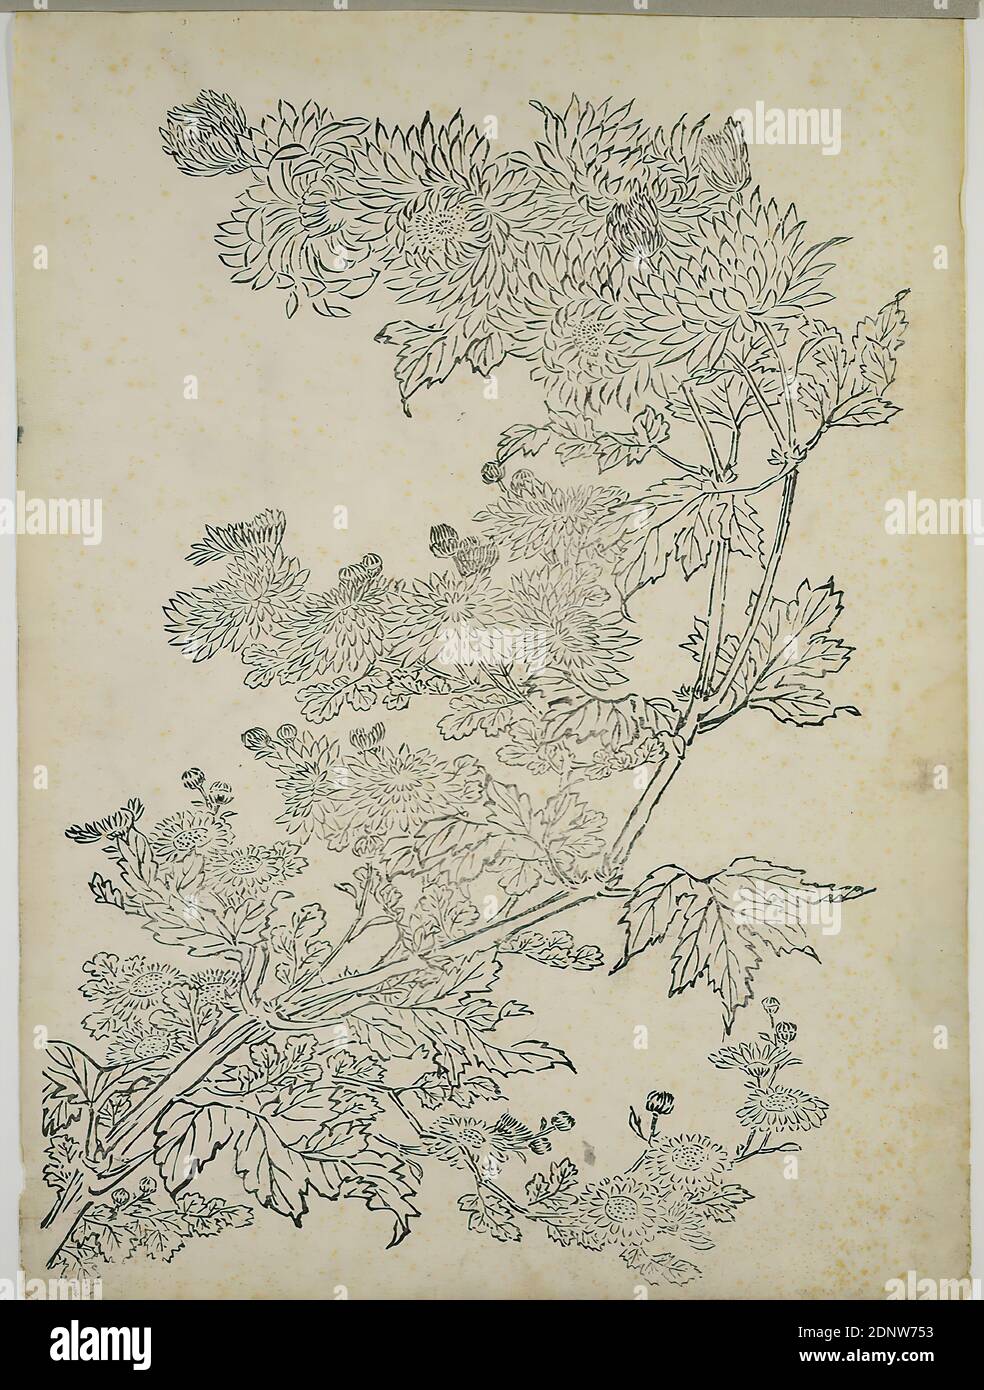 Nakaji Sadatoshi, blühender Chrysantheme Ast, schwarzer Linienschnitt, Gesamt: Höhe: 41,2 cm; Breite: 30,2 cm, unsigniert, Drucke, Drucksachen, Blumen, Edo-Periode Stockfoto